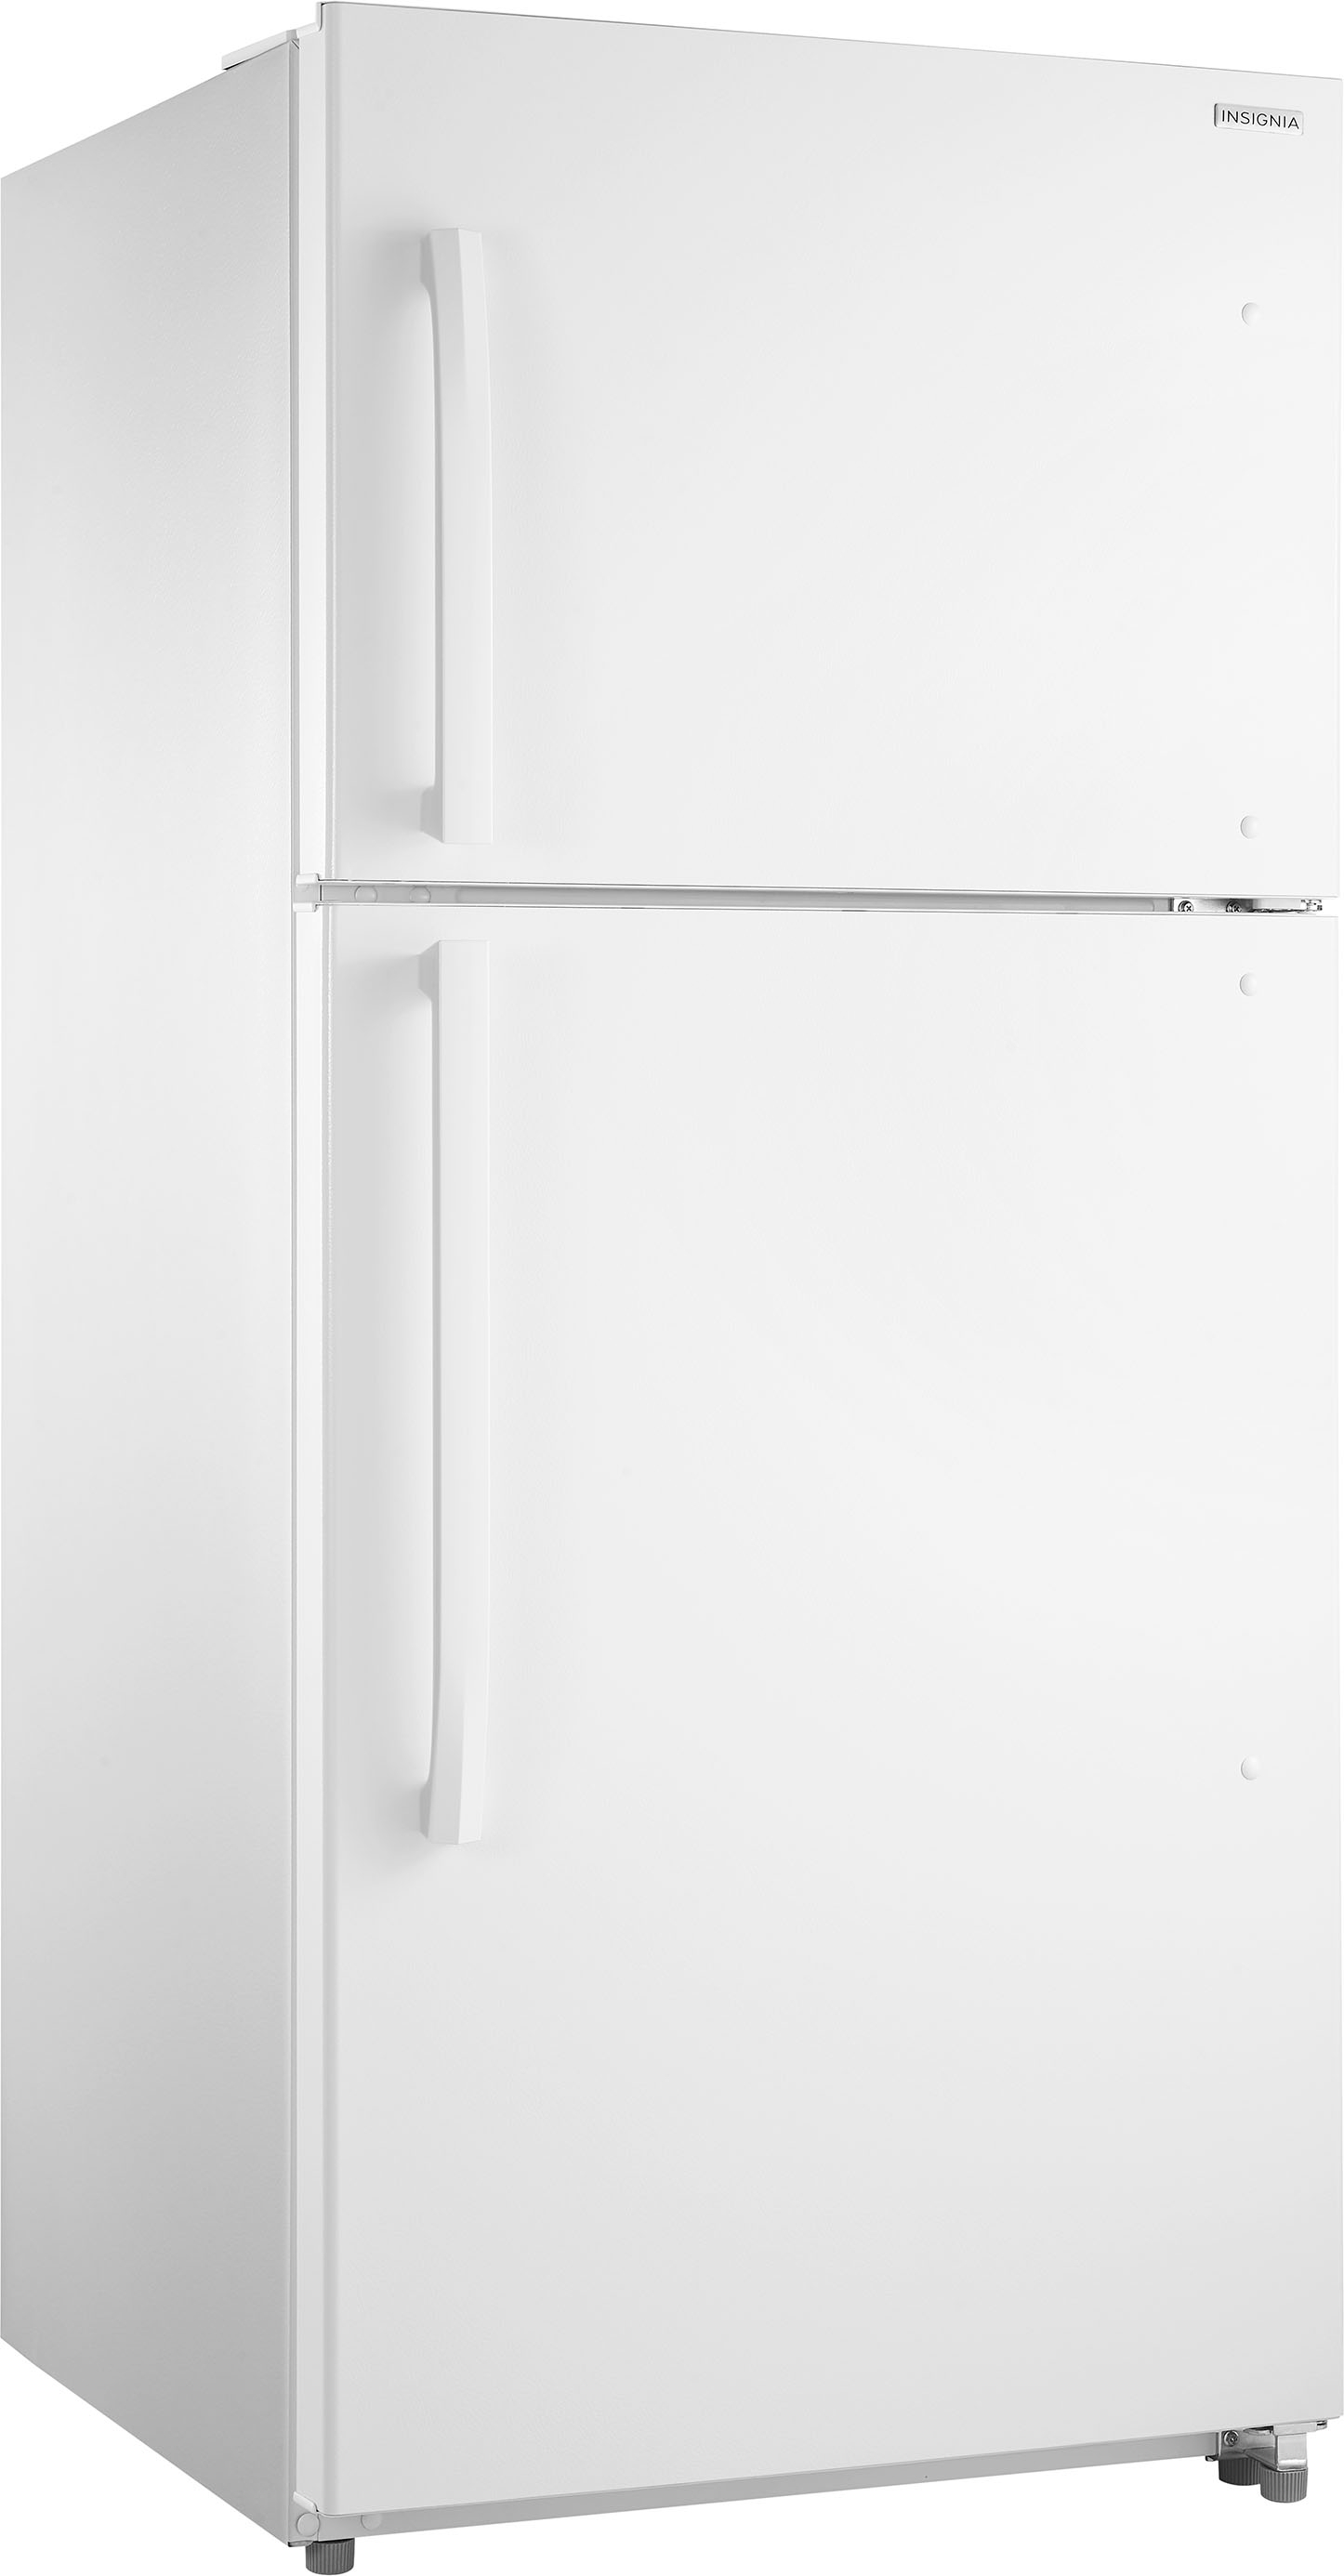 Angle View: Insignia™ - 18 Cu. Ft. Top-Freezer Refrigerator - White